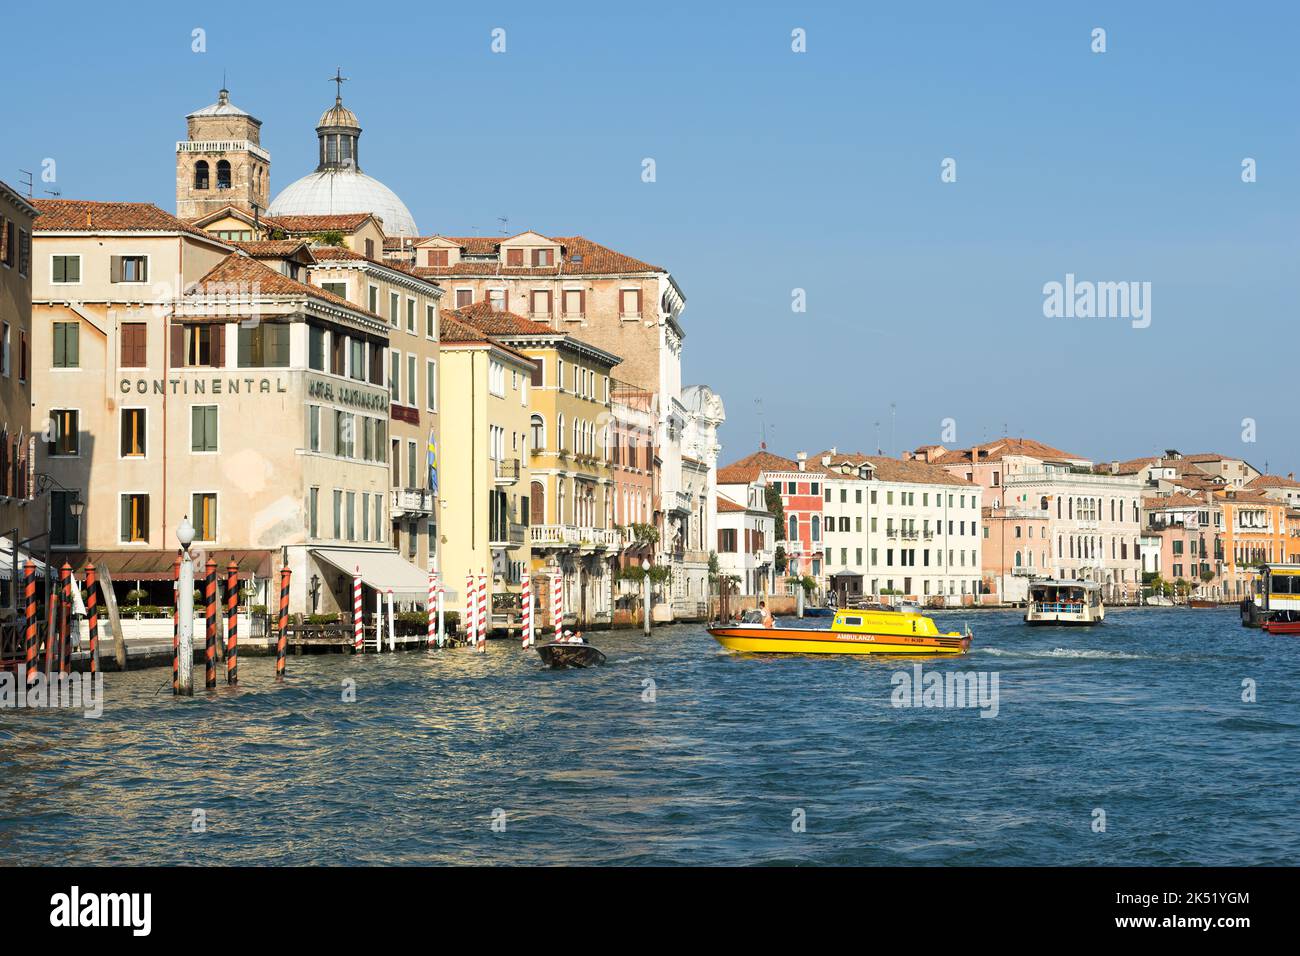 VENISE, ITALIE - OCTOBRE 12 : bâtiments et bateaux colorés à Venise sur 12 octobre 2014. Personnes non identifiées Banque D'Images